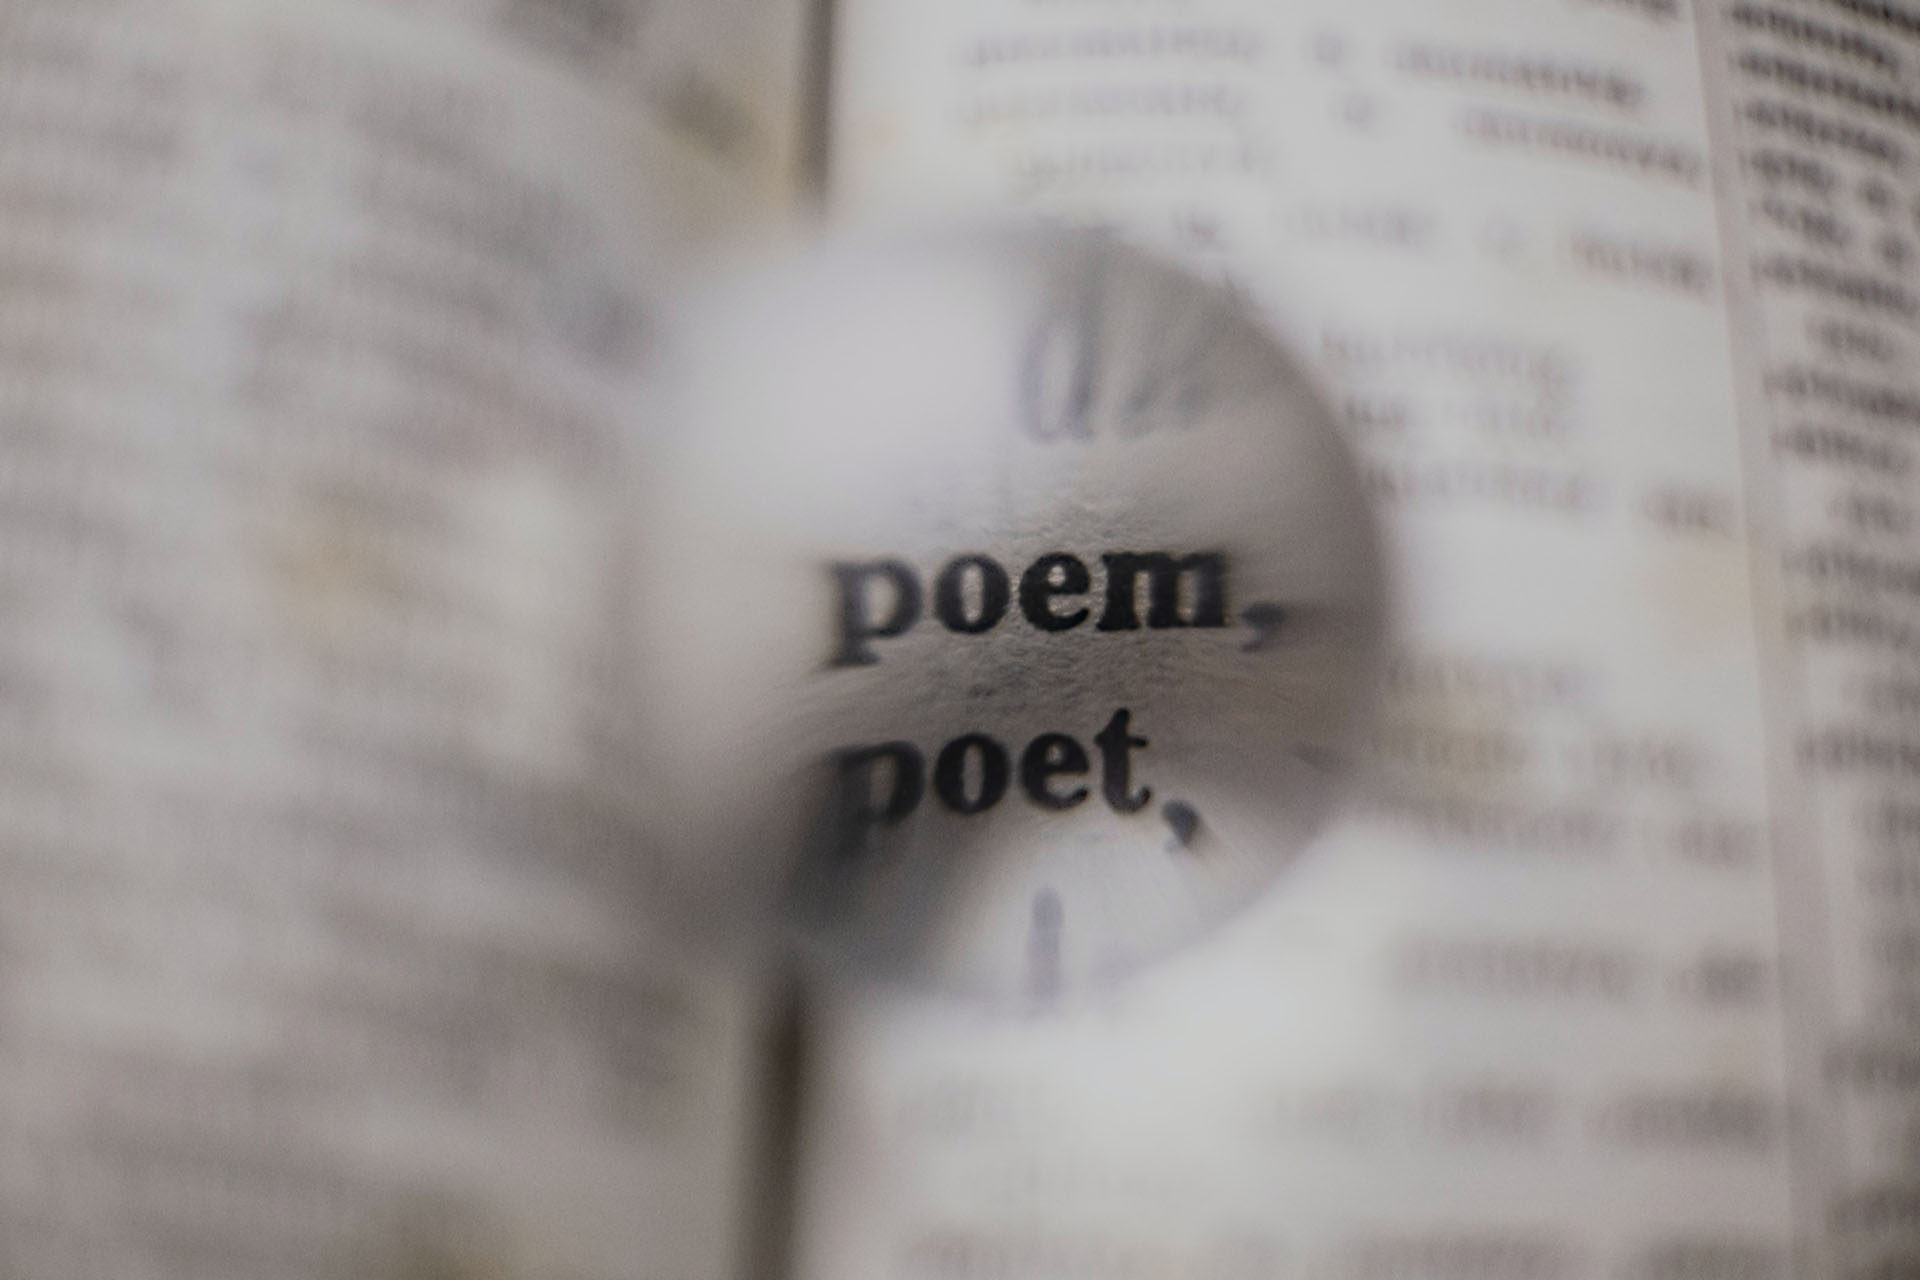 Poem-Poet